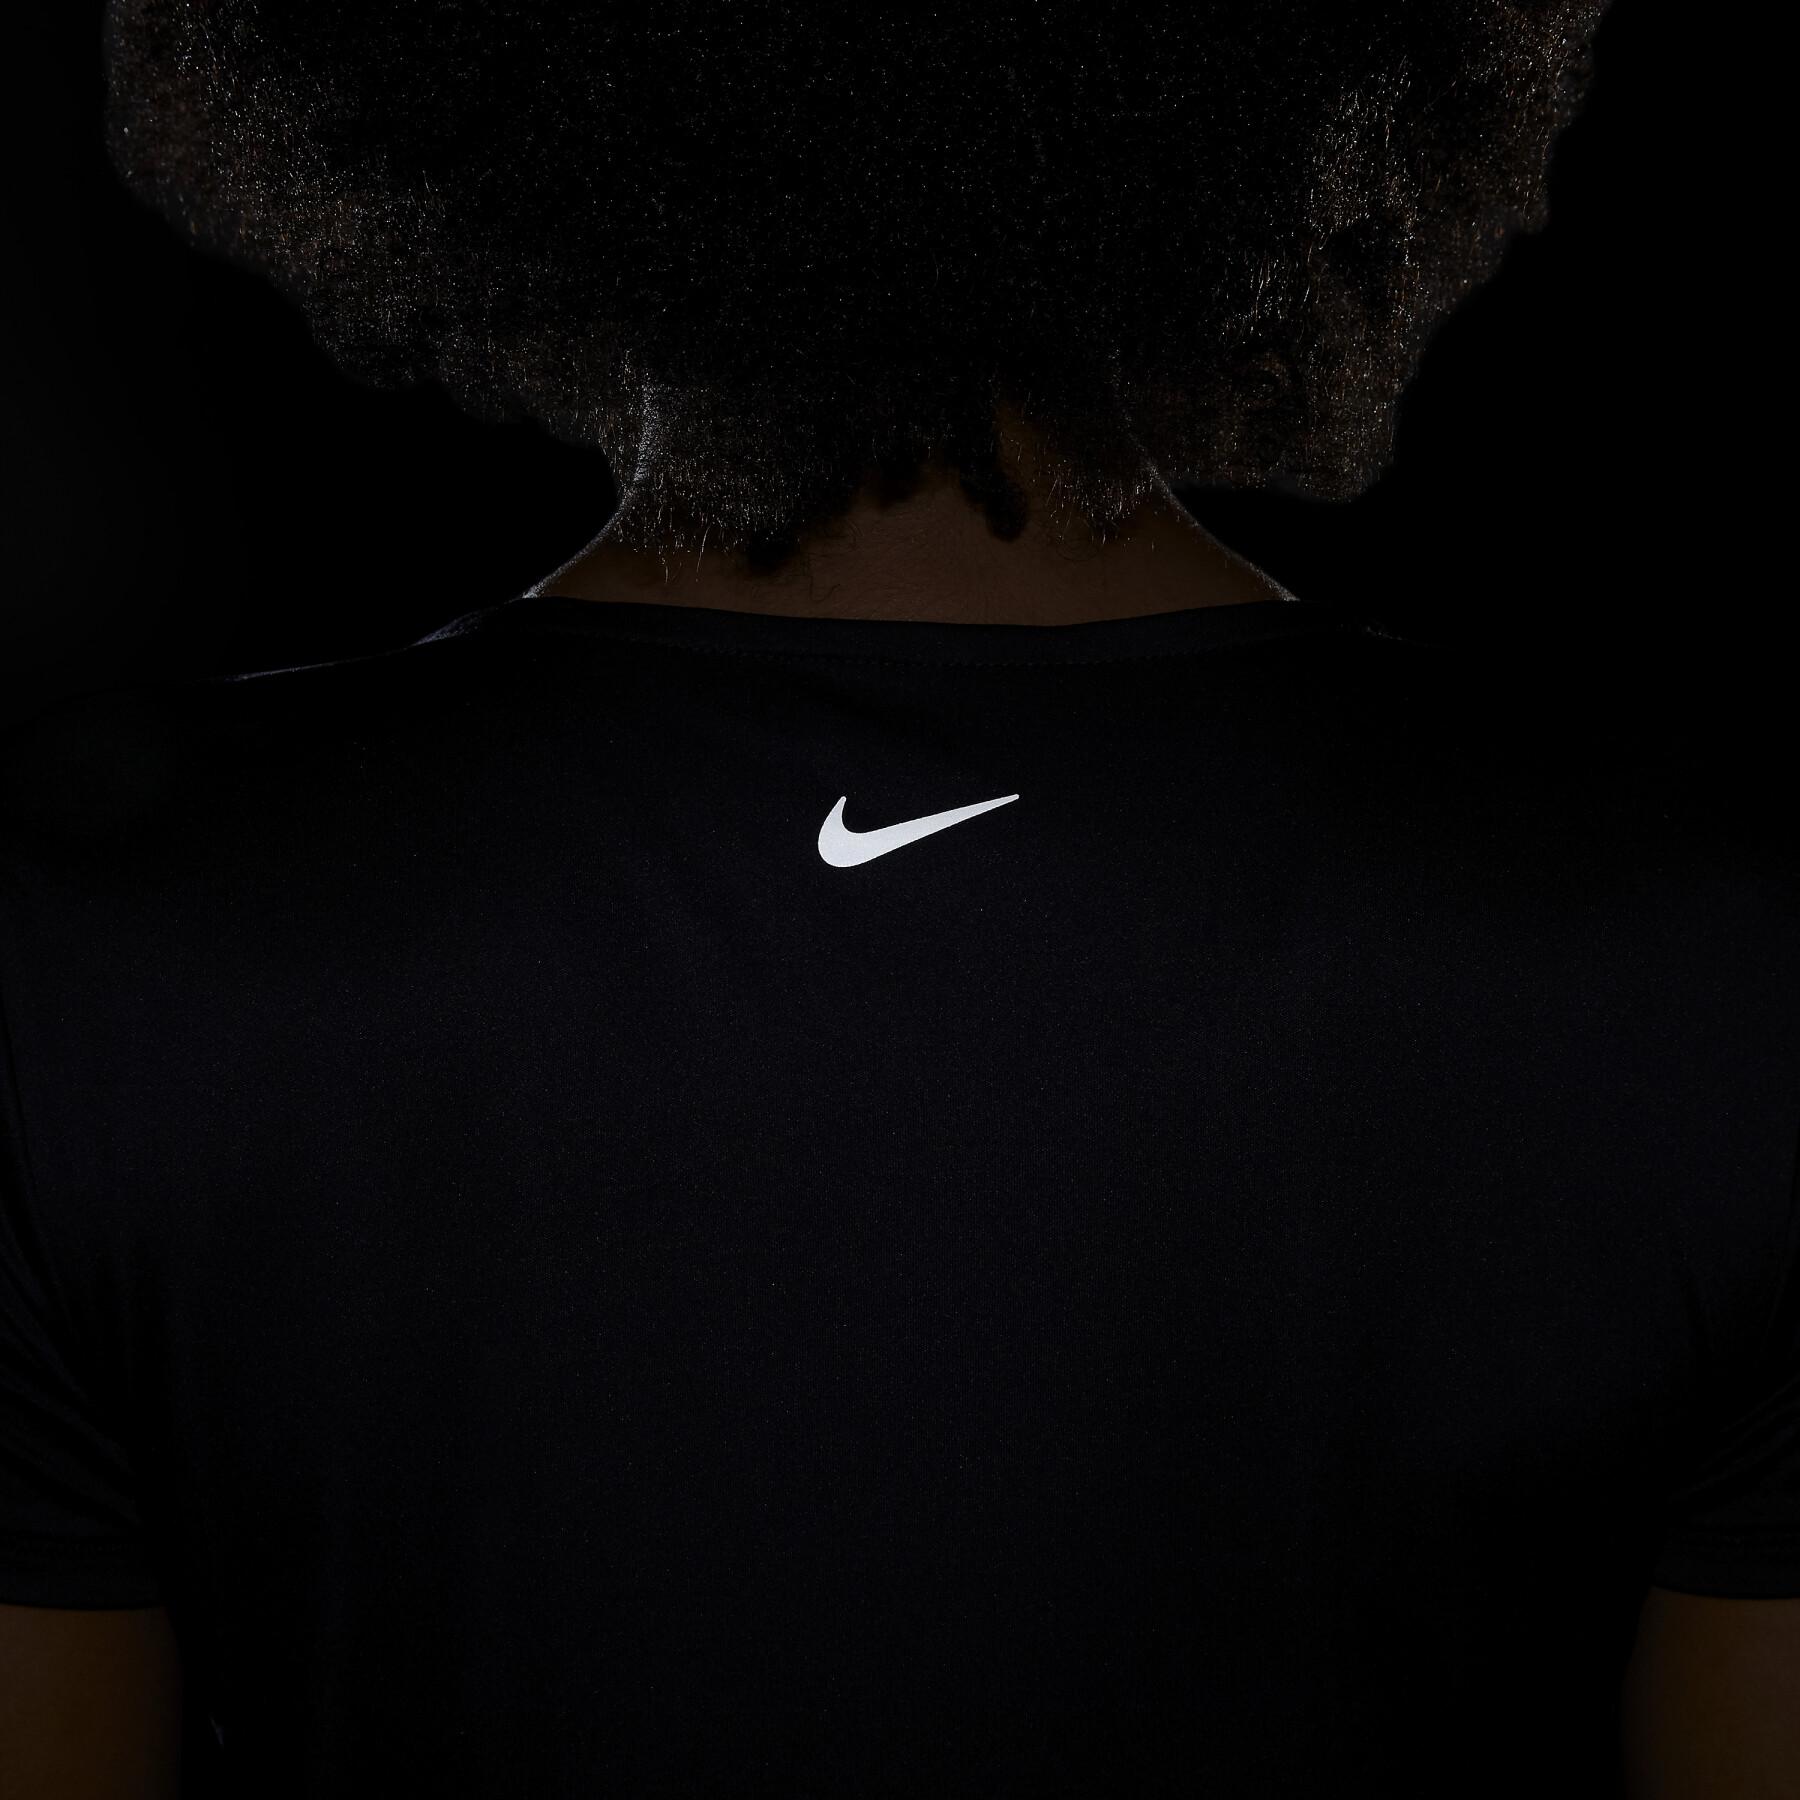 Women's T-shirt Nike Swoosh Run